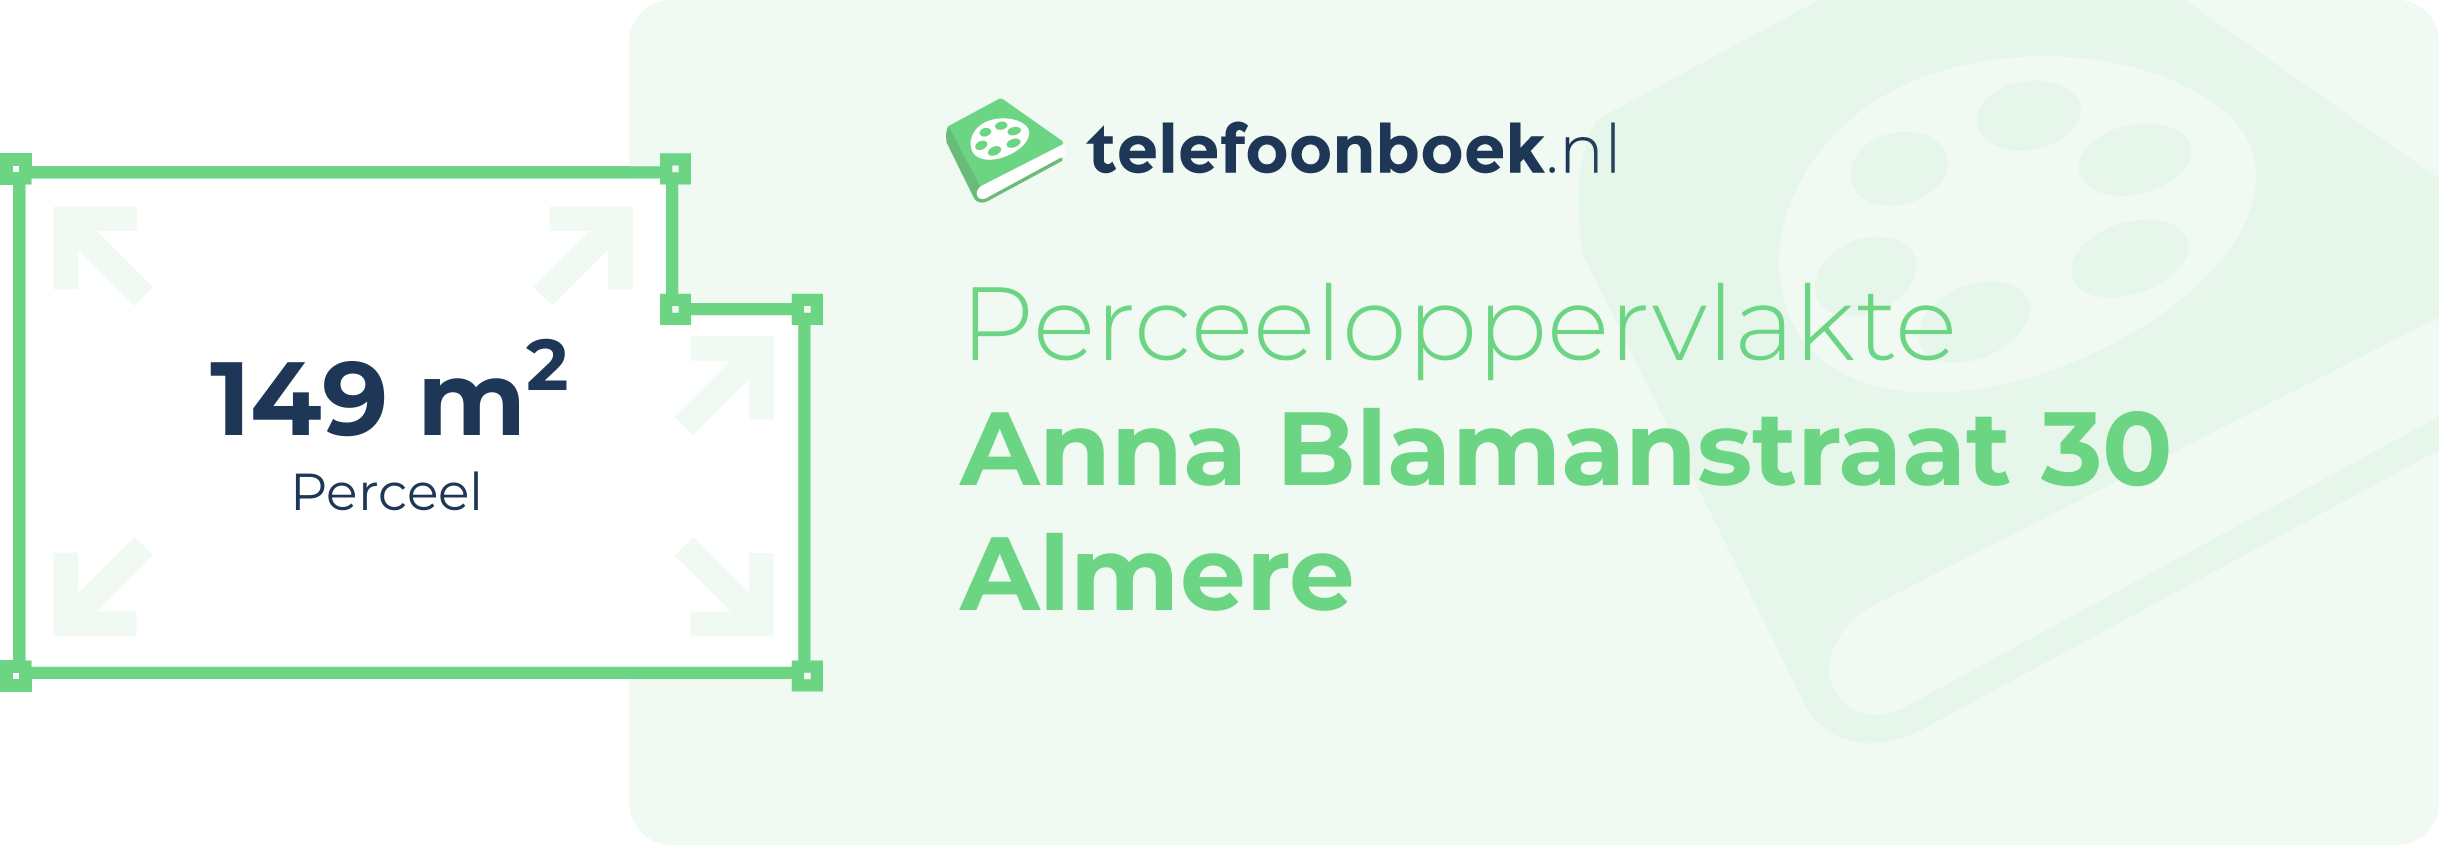 Perceeloppervlakte Anna Blamanstraat 30 Almere